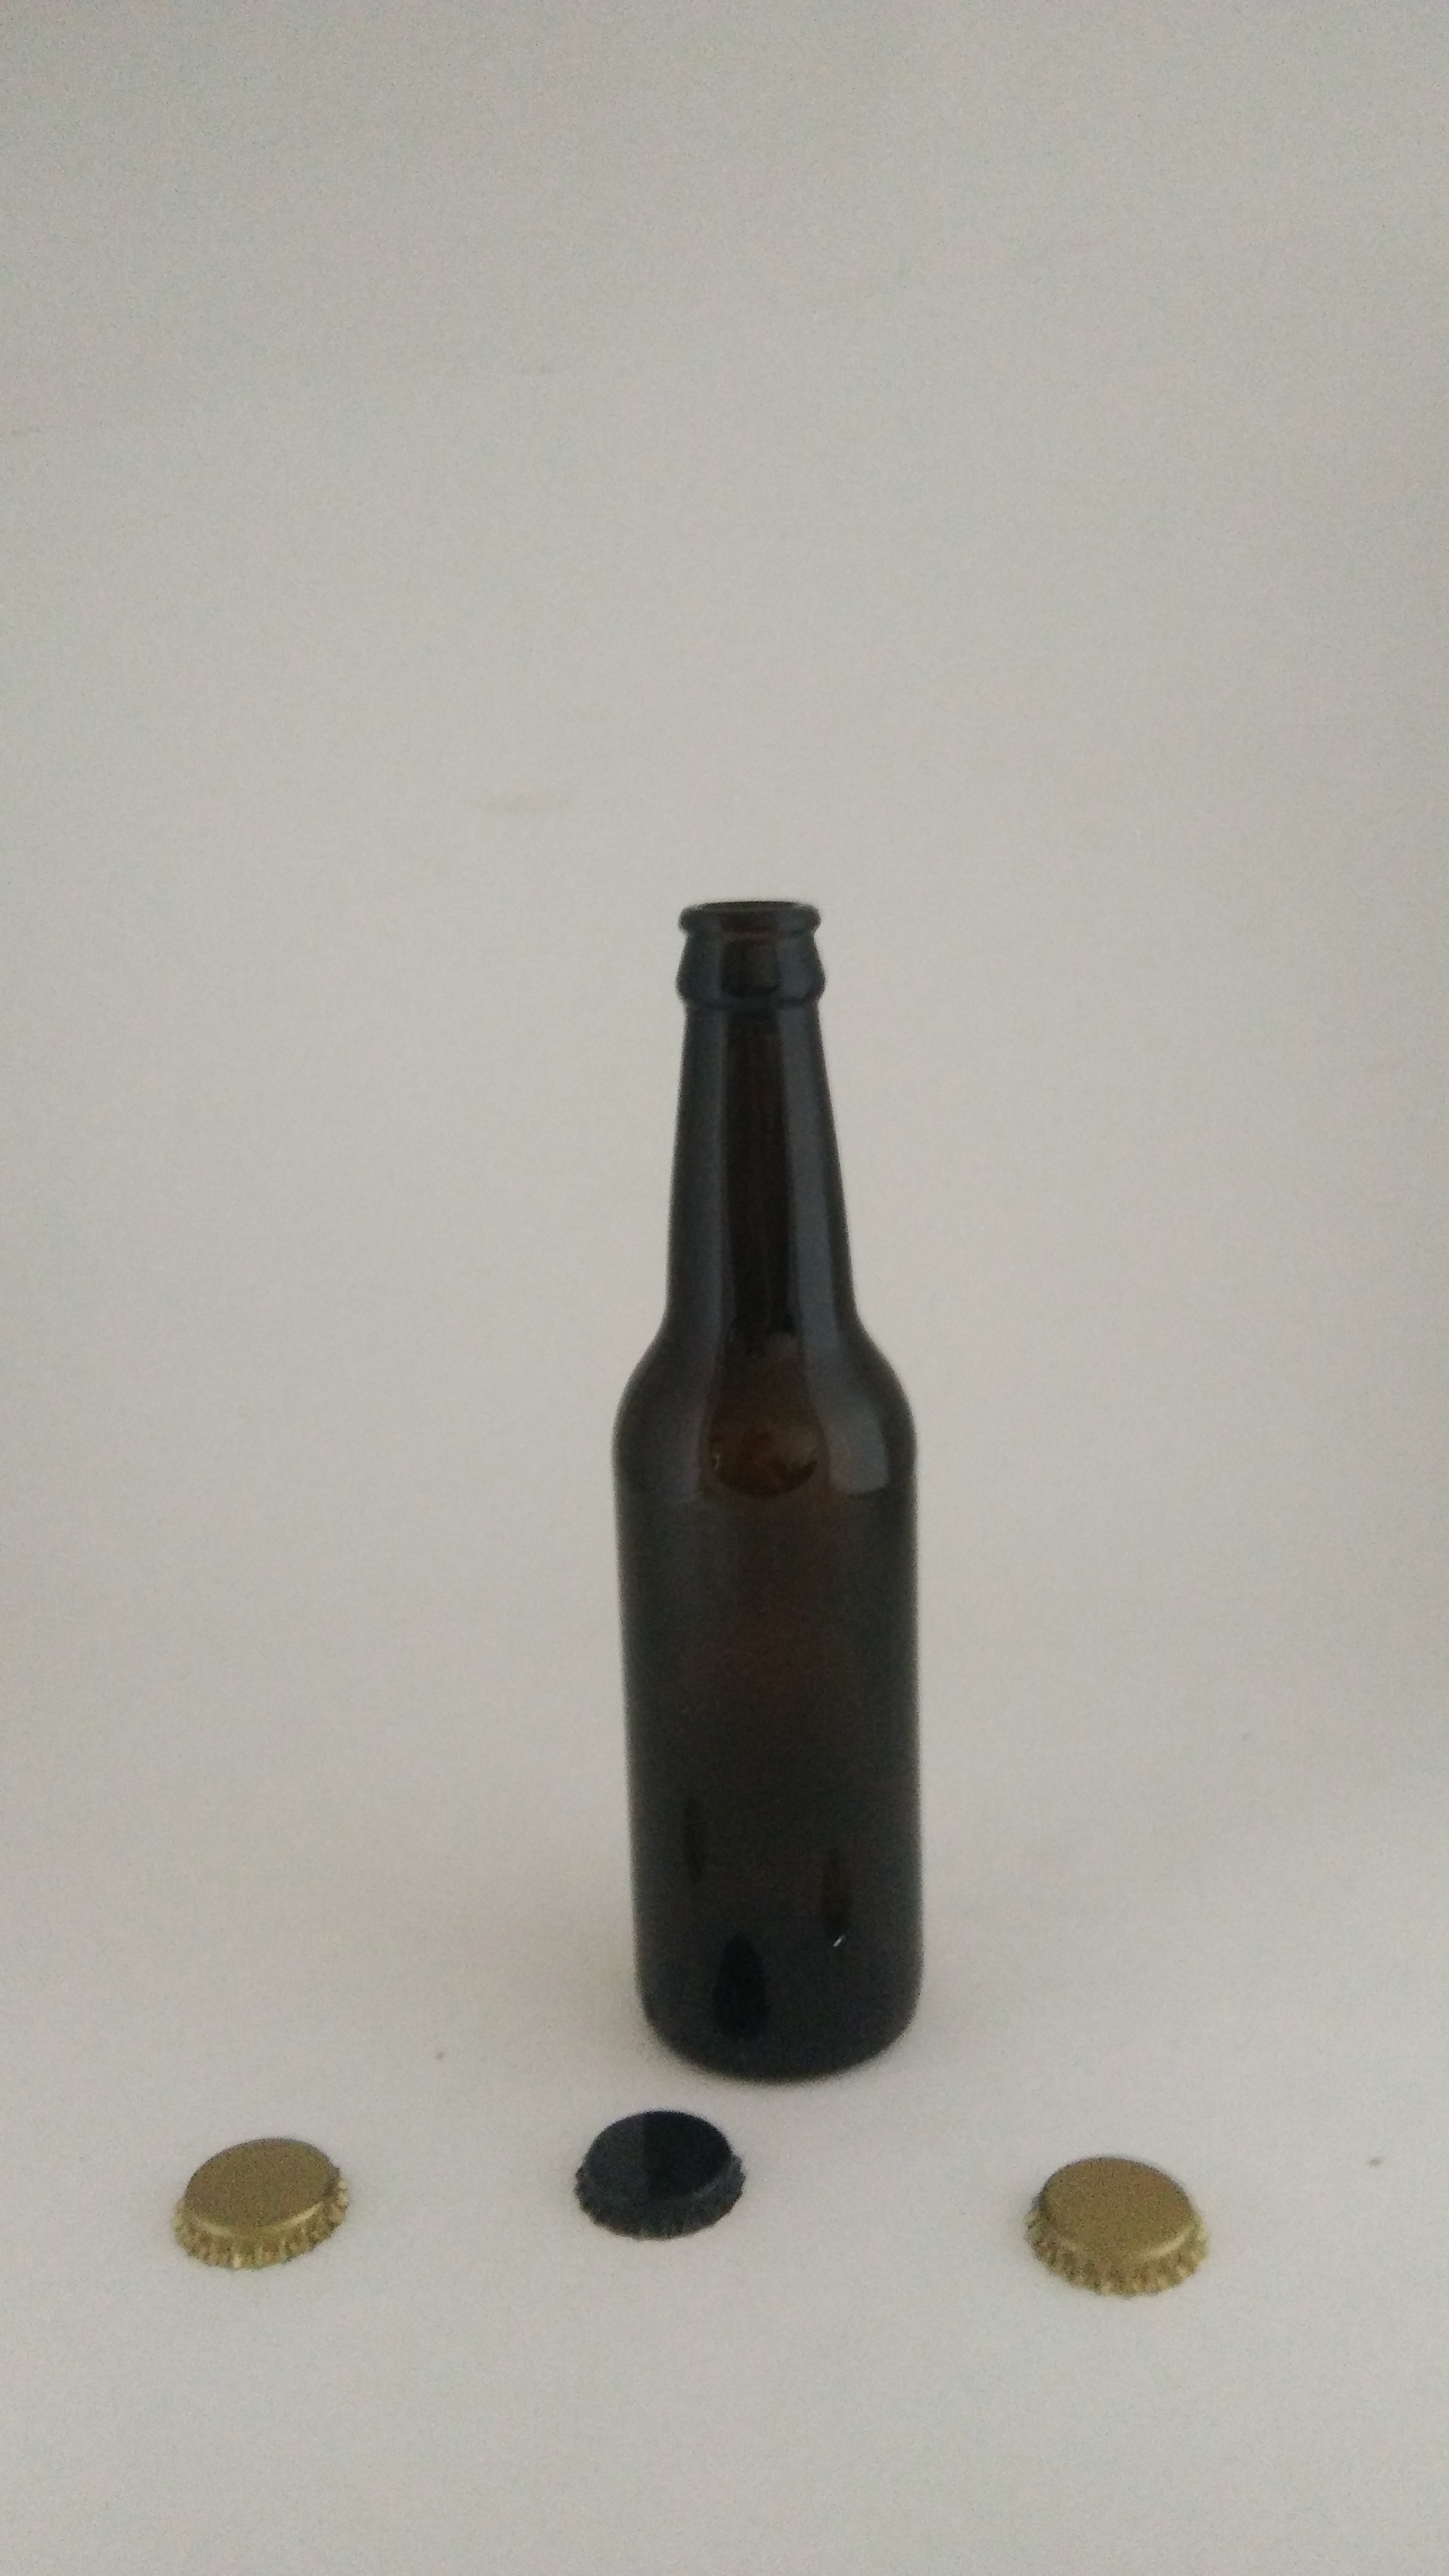 徐州市棕色啤酒瓶空玻璃瓶汽水饮料瓶厂家棕色啤酒瓶空玻璃瓶汽水饮料瓶